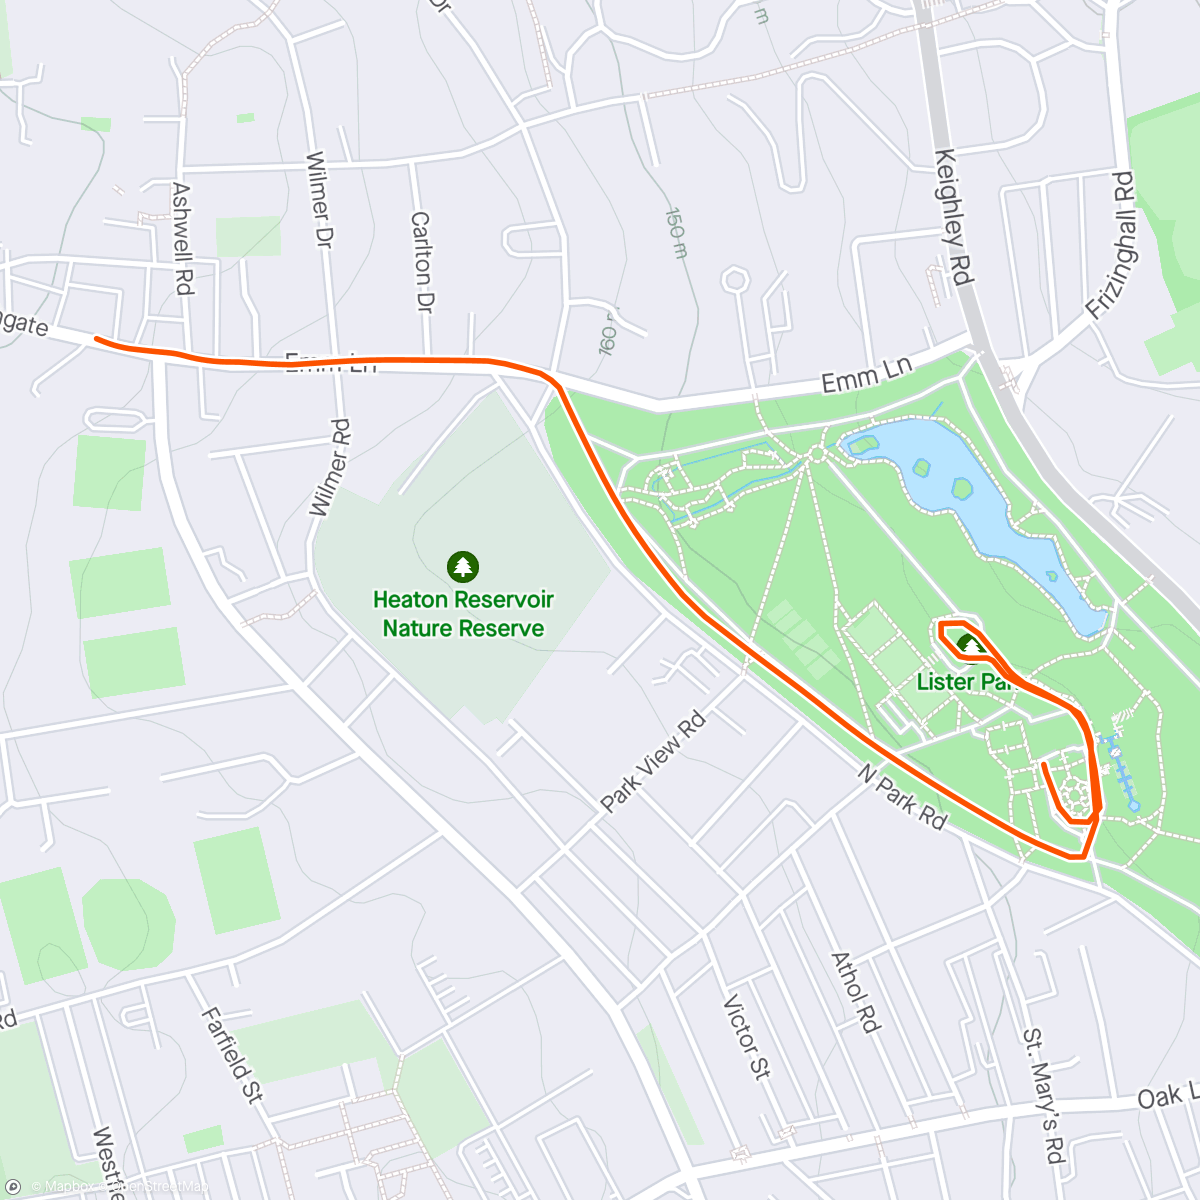 アクティビティ「Run to Volunteer at Lister Parkrun」の地図